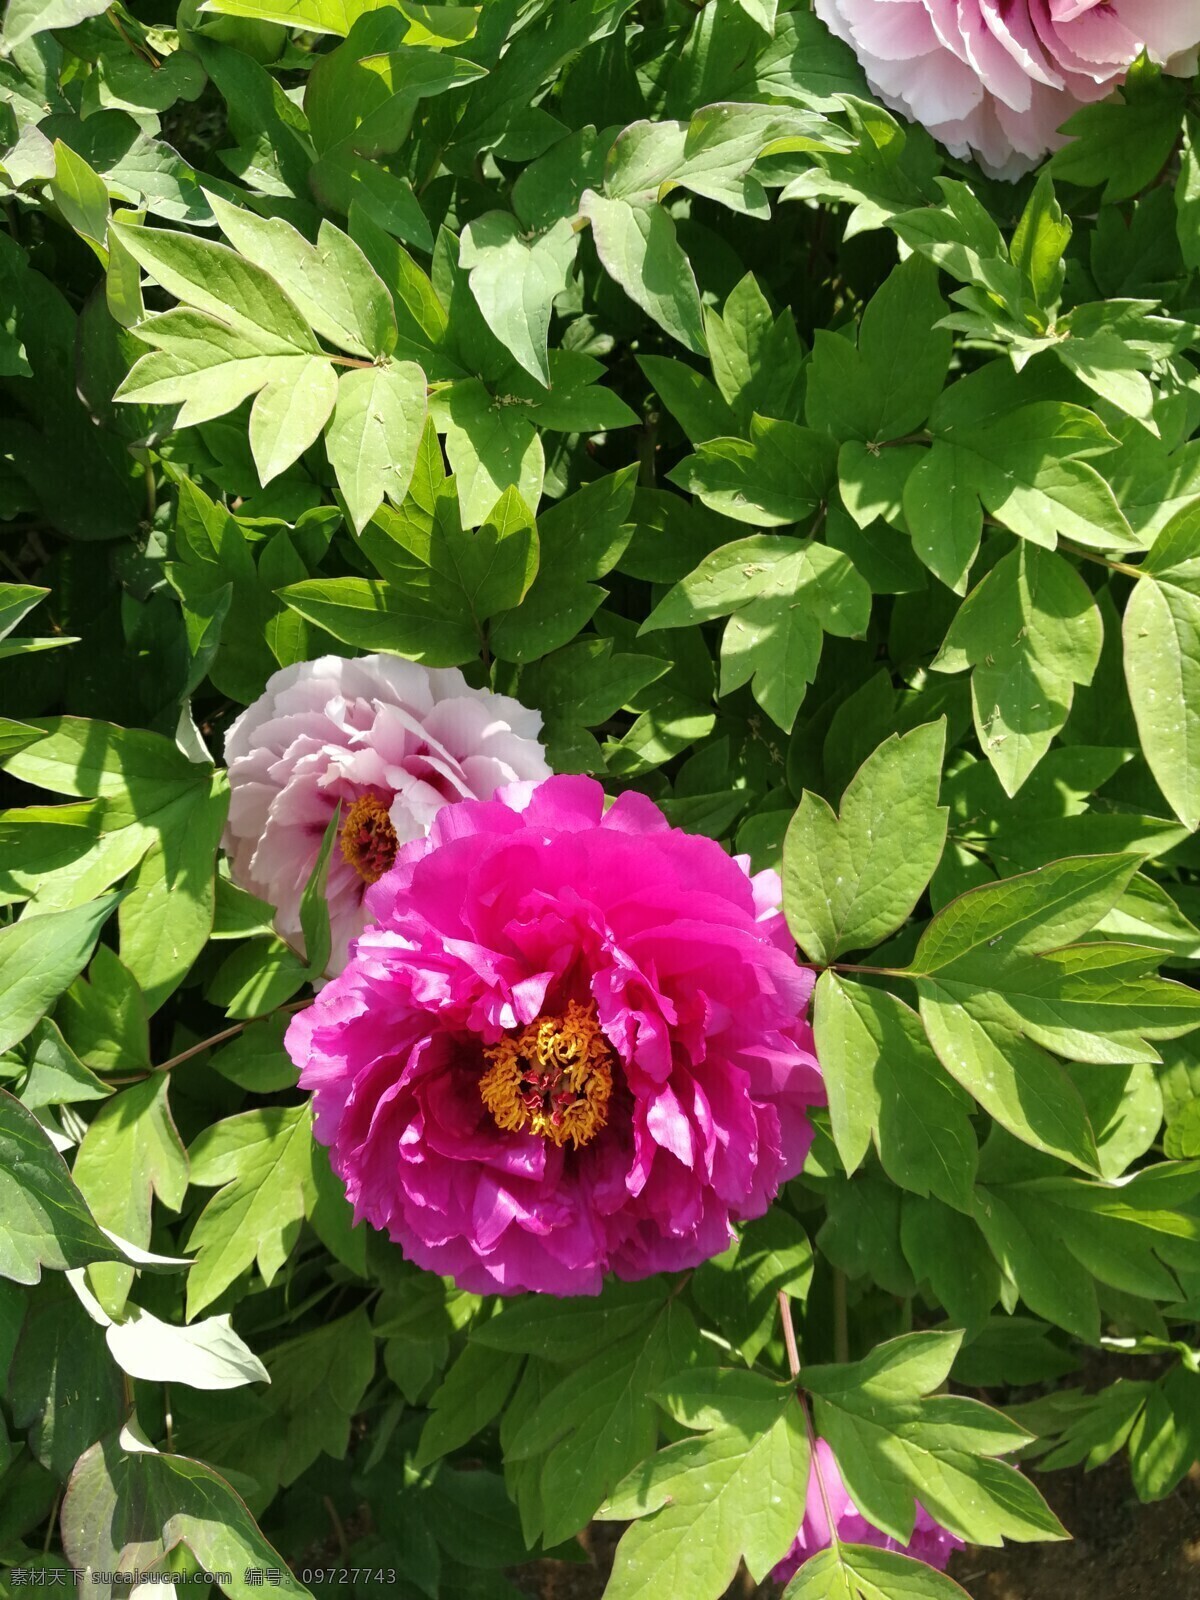 牡丹图片 粉色 白色 红色 牡丹 蜜蜂 照片 雍容华贵 富贵牡丹 花朵 花开 花卉 植物 绿叶 园林 花园 自然景观 自然风景